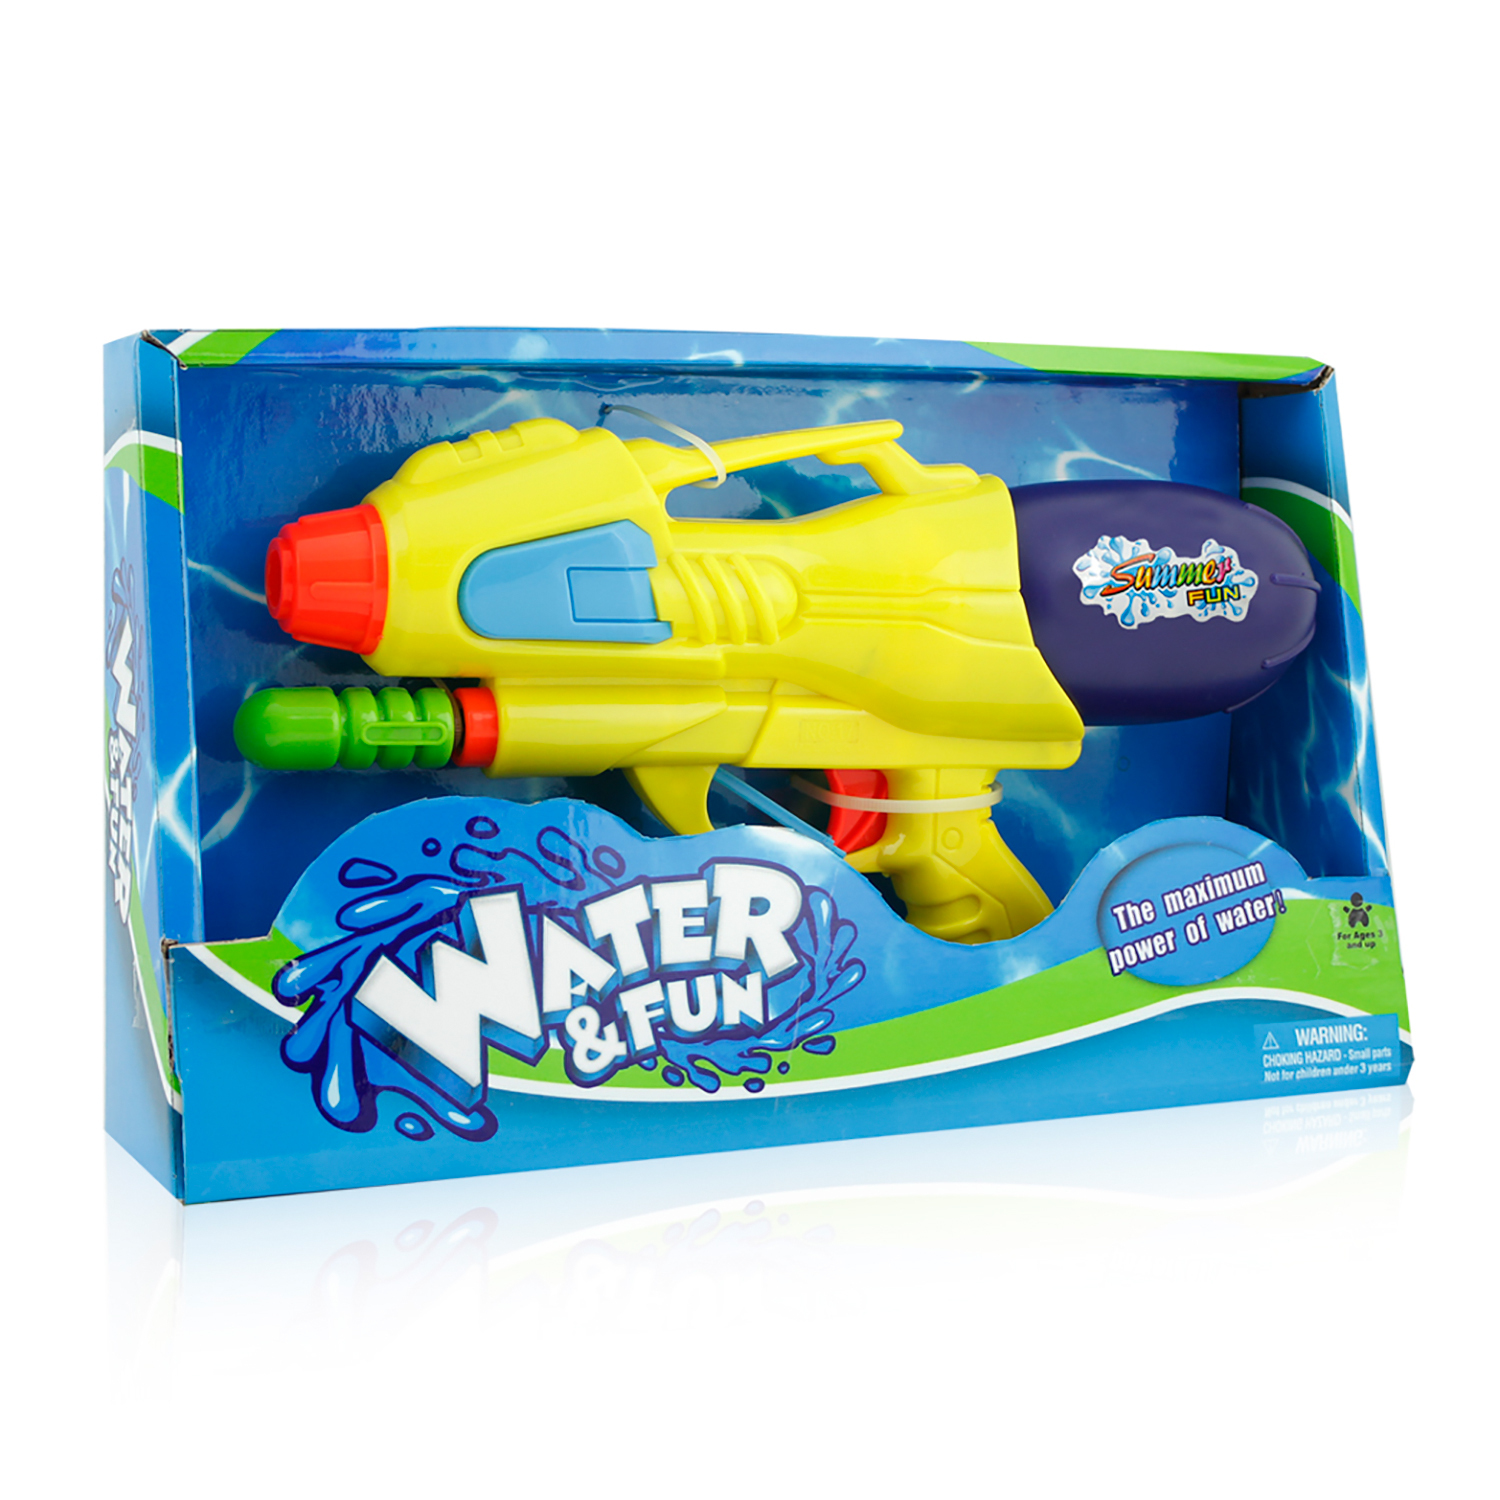 Water & Fun Super Soaker Cannon Image 1